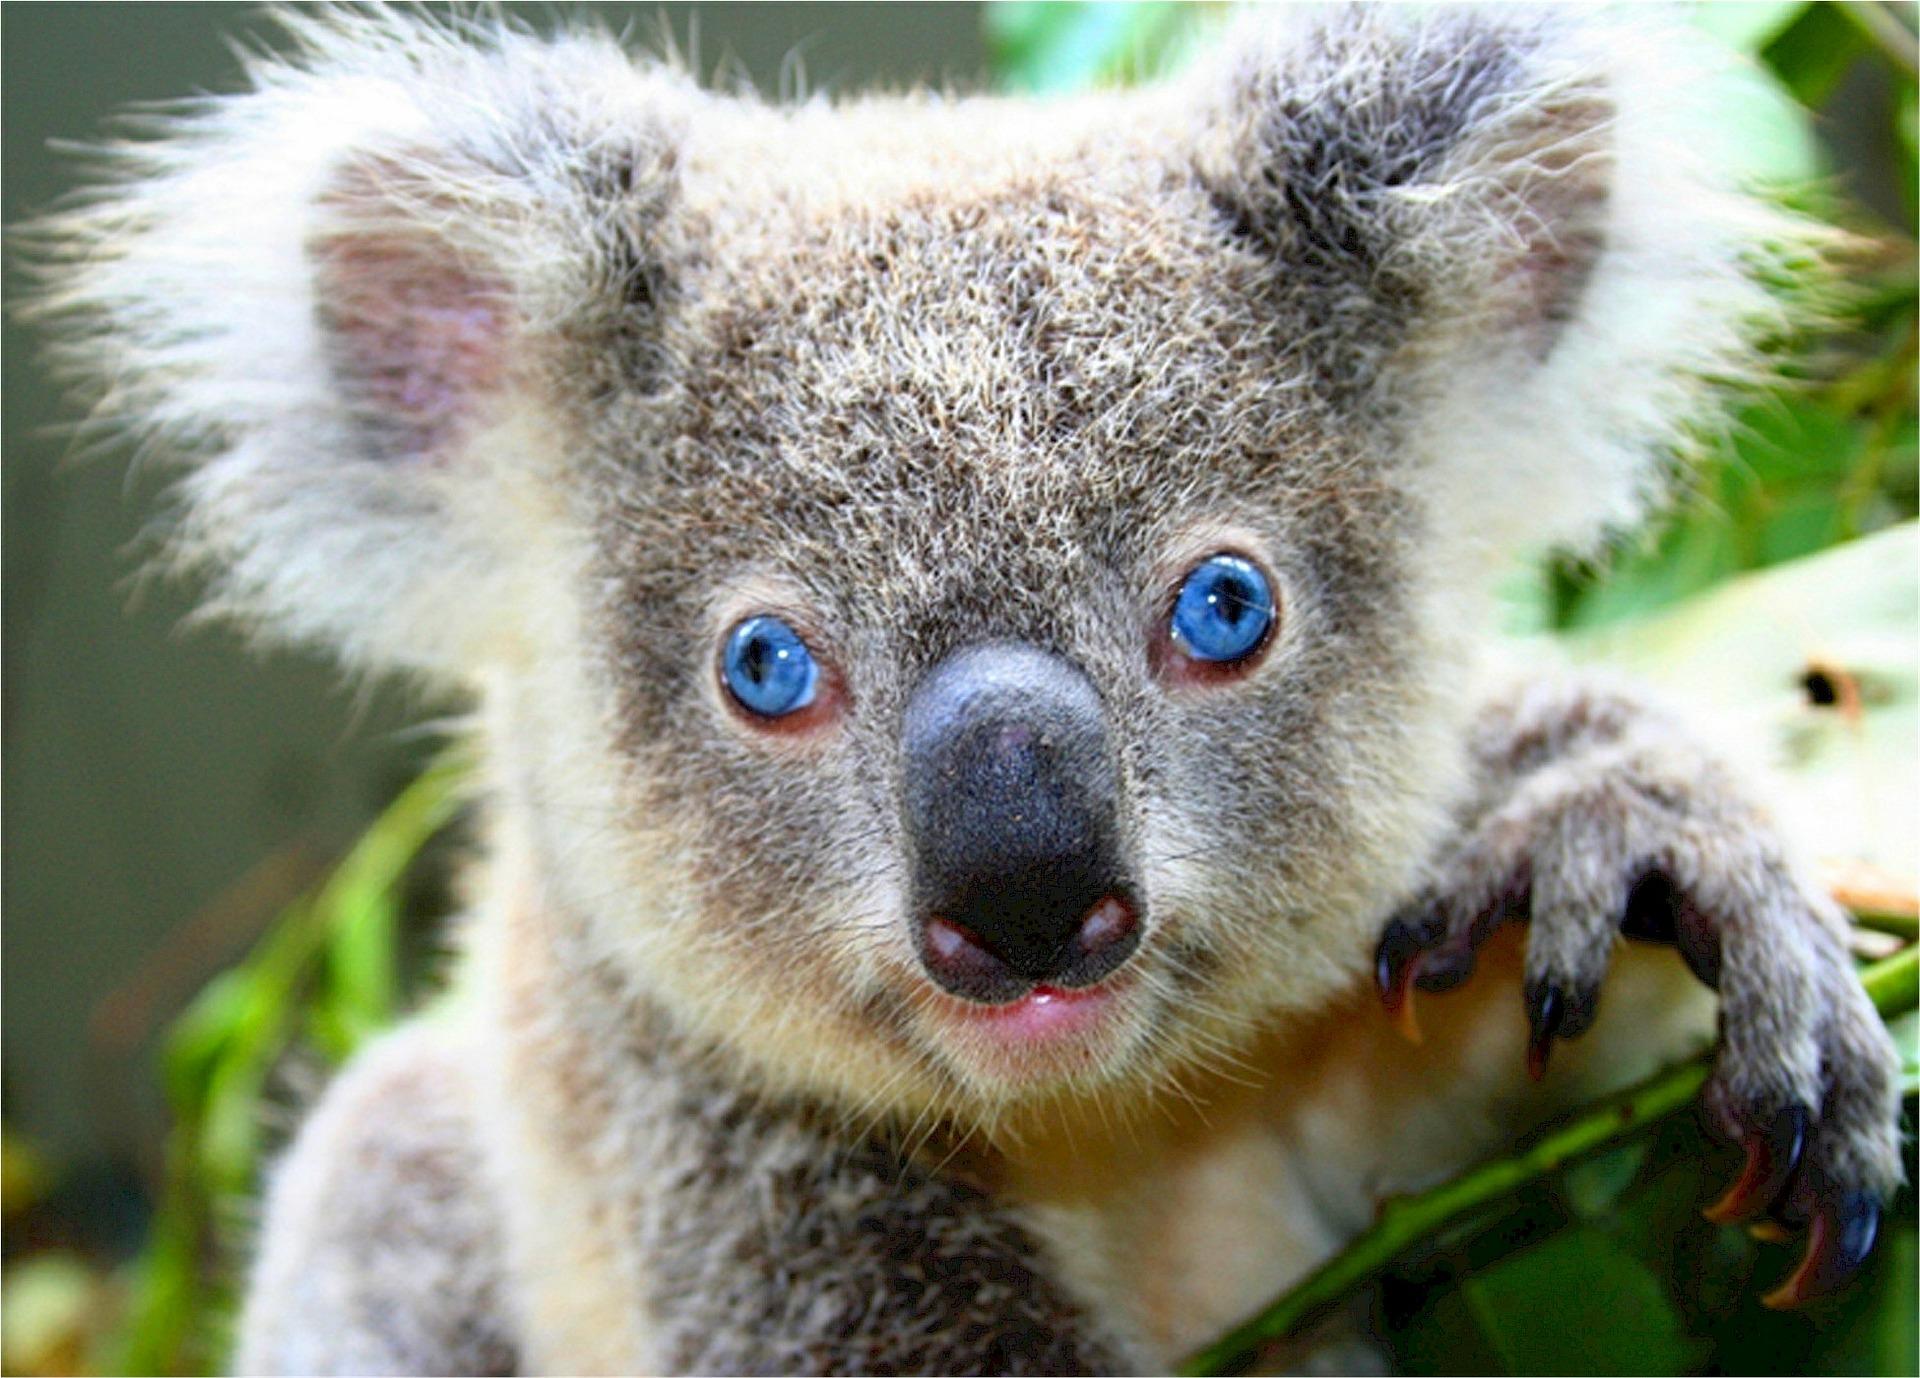 koala image - links to substance use page